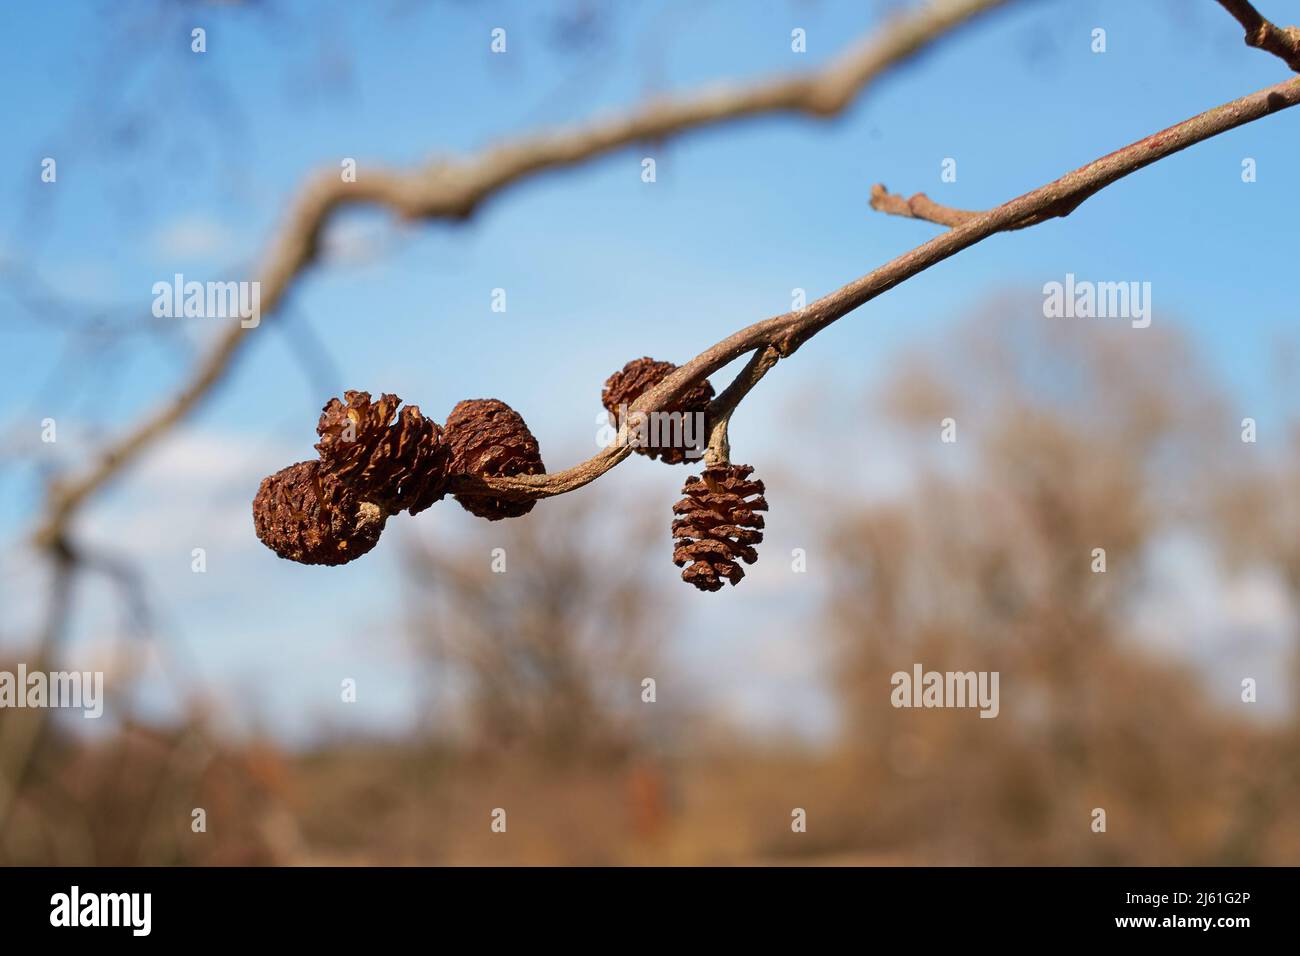 Alnus glutinosa. Cones of black alder against the sky in close-up Stock Photo